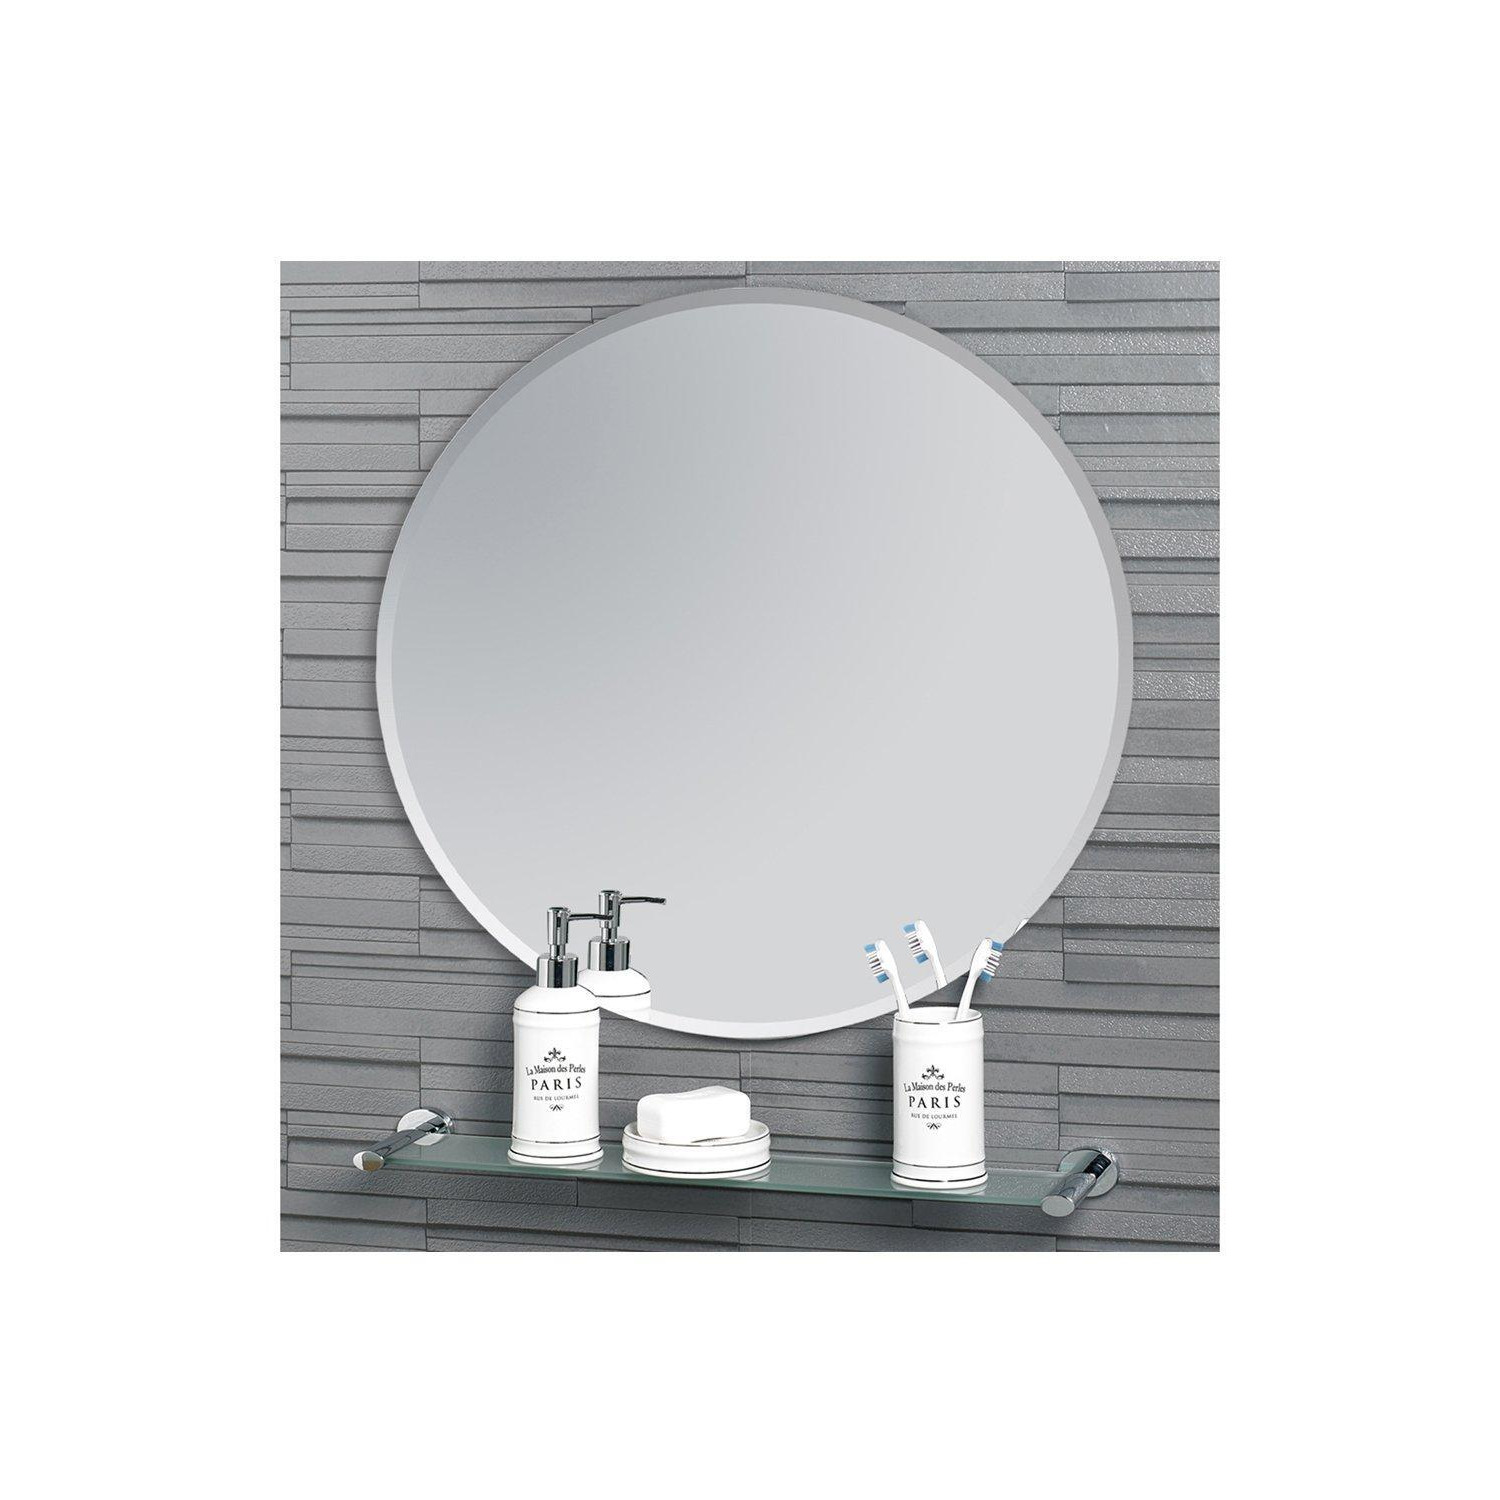 'Fitzrovia' Round Mirror 60Cm Diameter - image 1